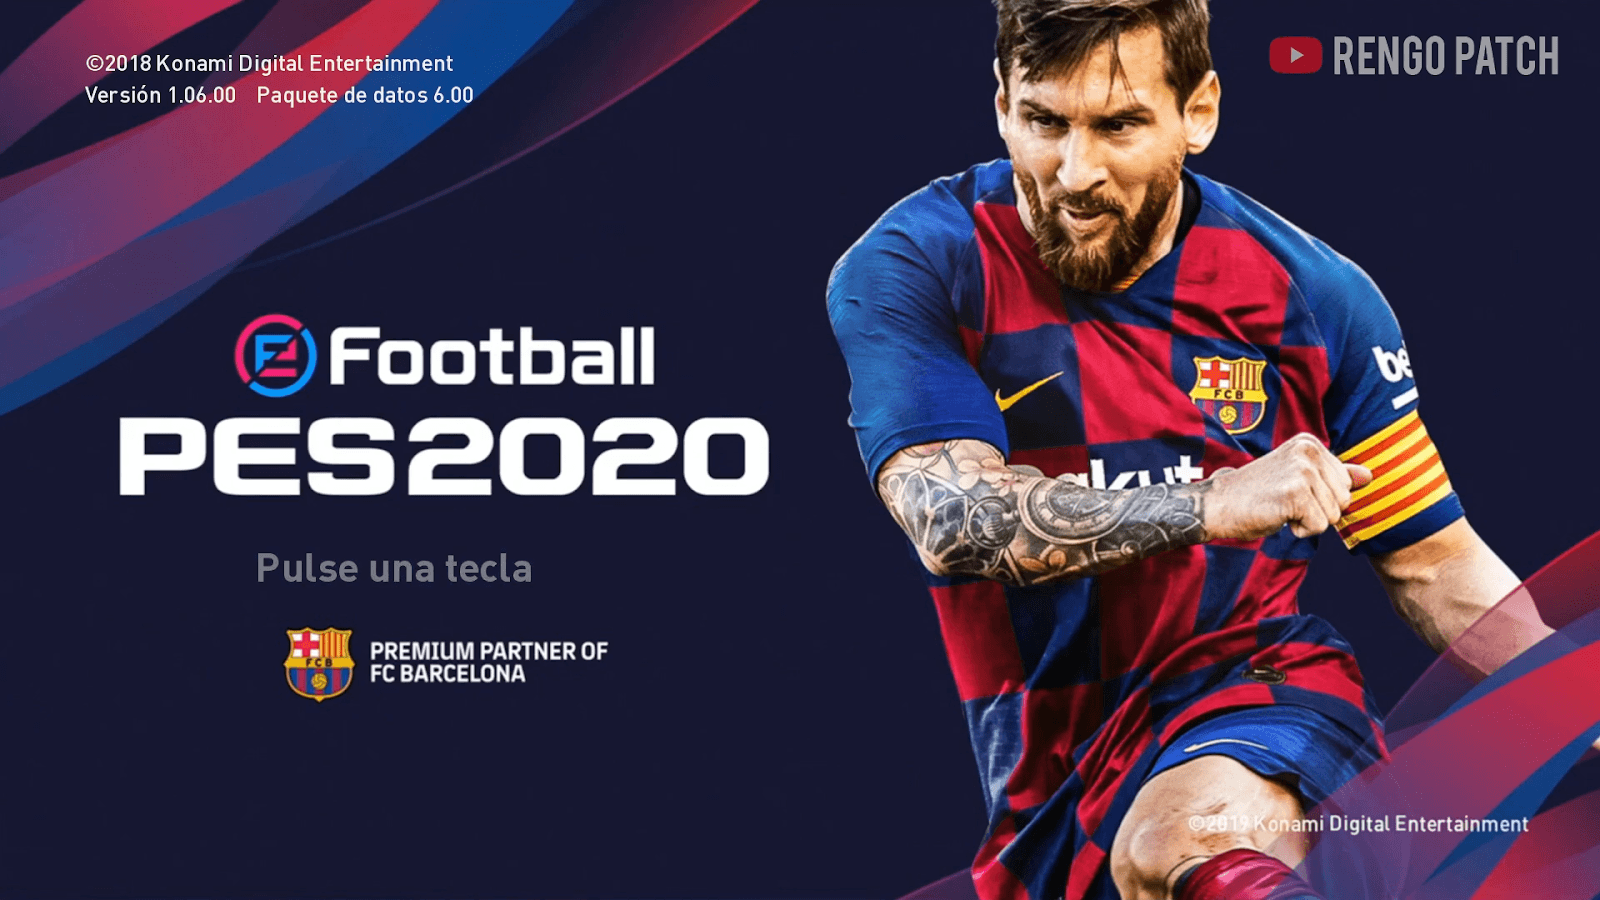 eFootball PES 2020 Graphic Menu for PES 2019 SoccerFandom.com